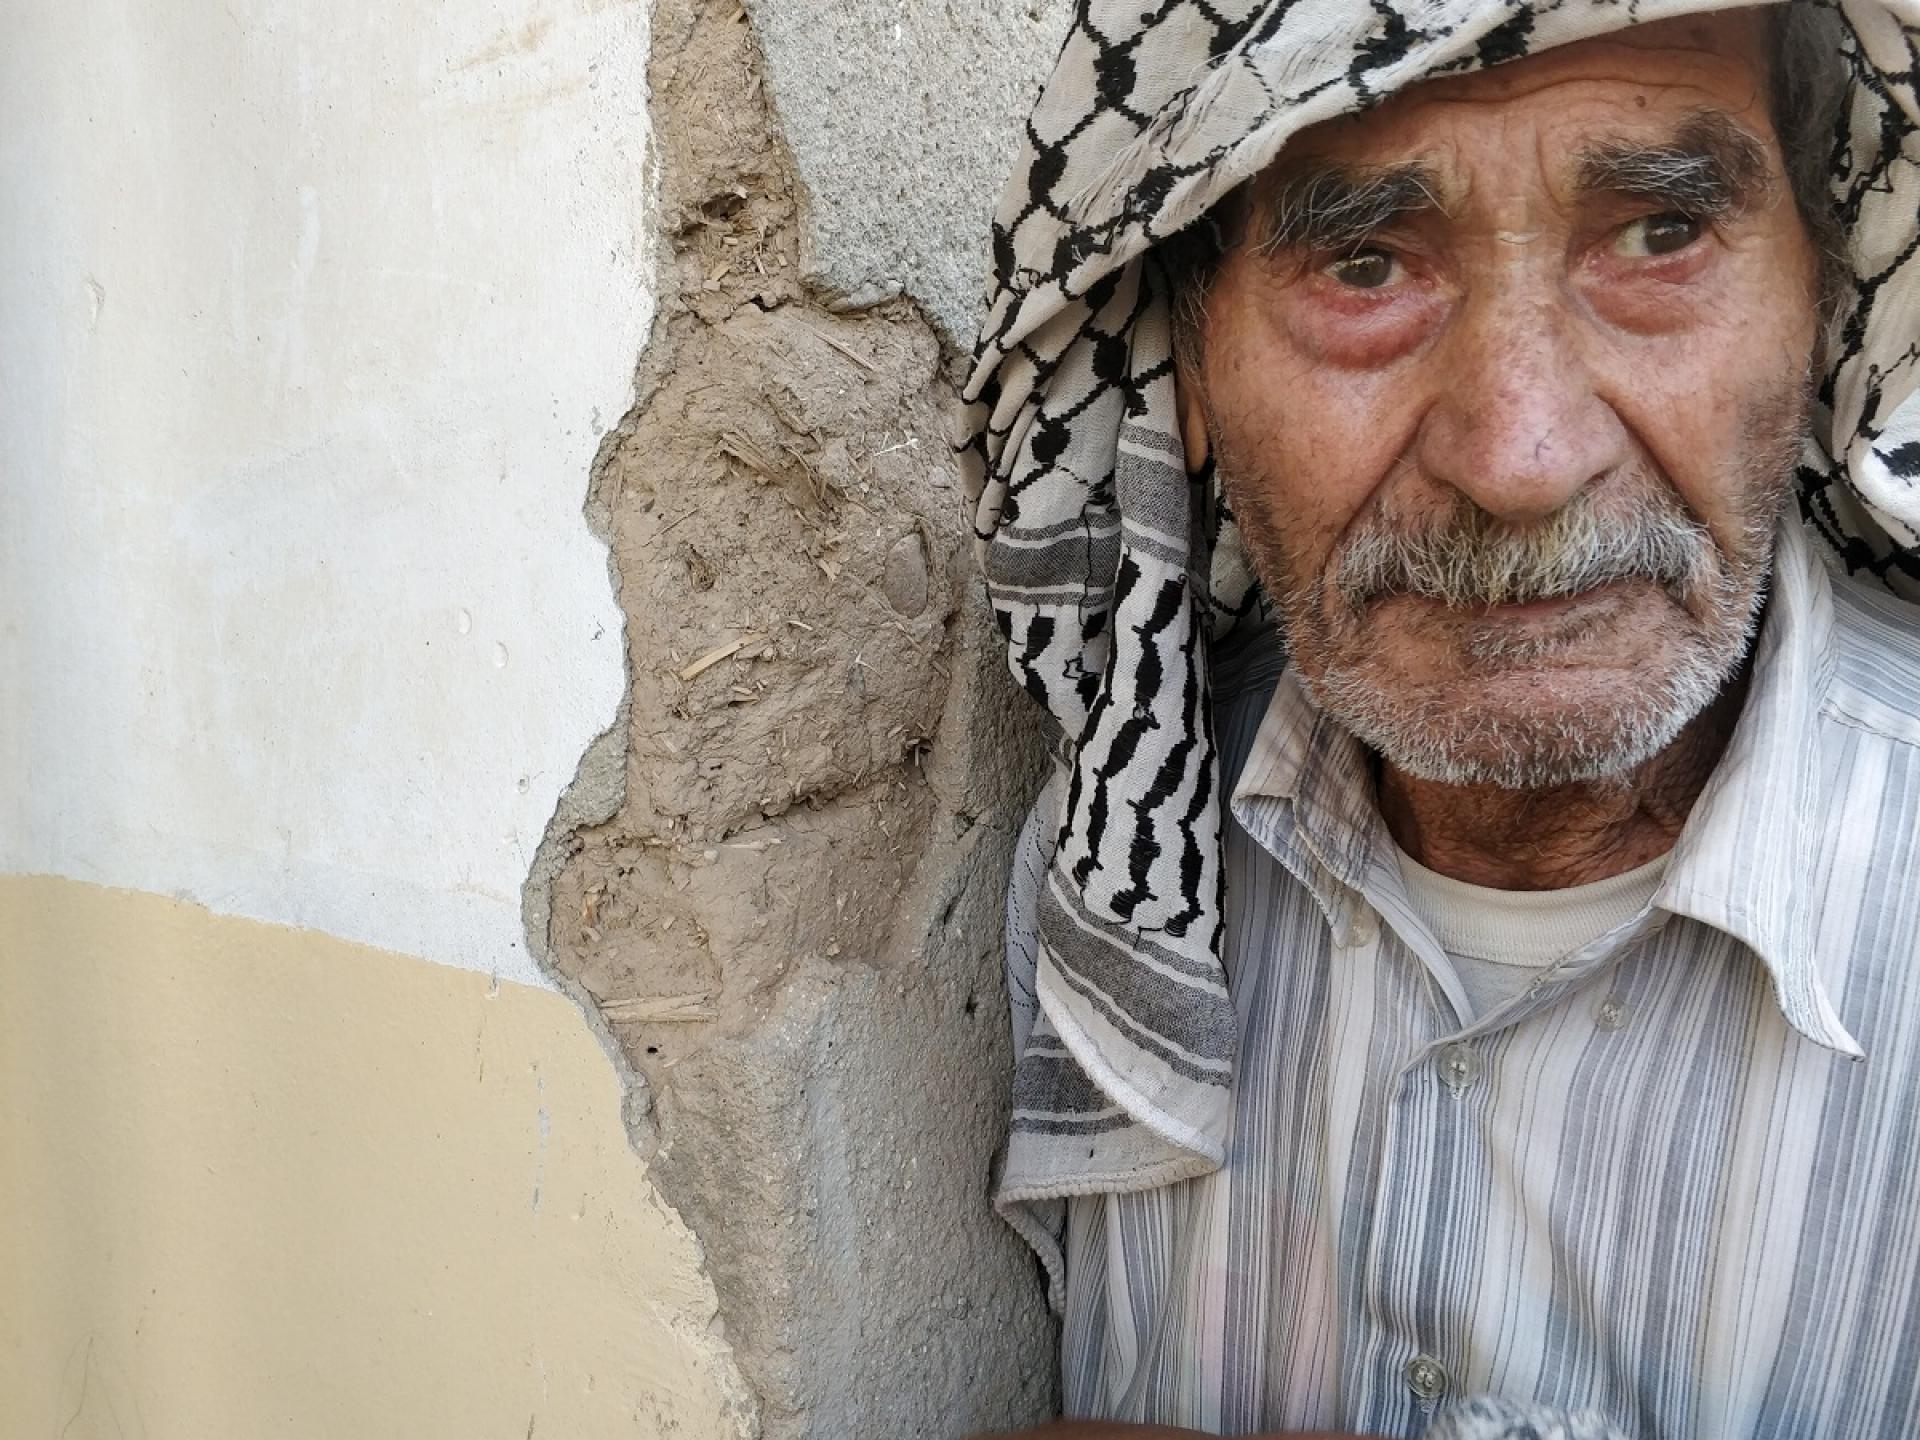 מרע'י בן ה-83 (על שמו נקרא הכפר) בהלם לאחר שבית משפחתו נהרס.  "איפה נישן הלילה? " הוא שב ושואל